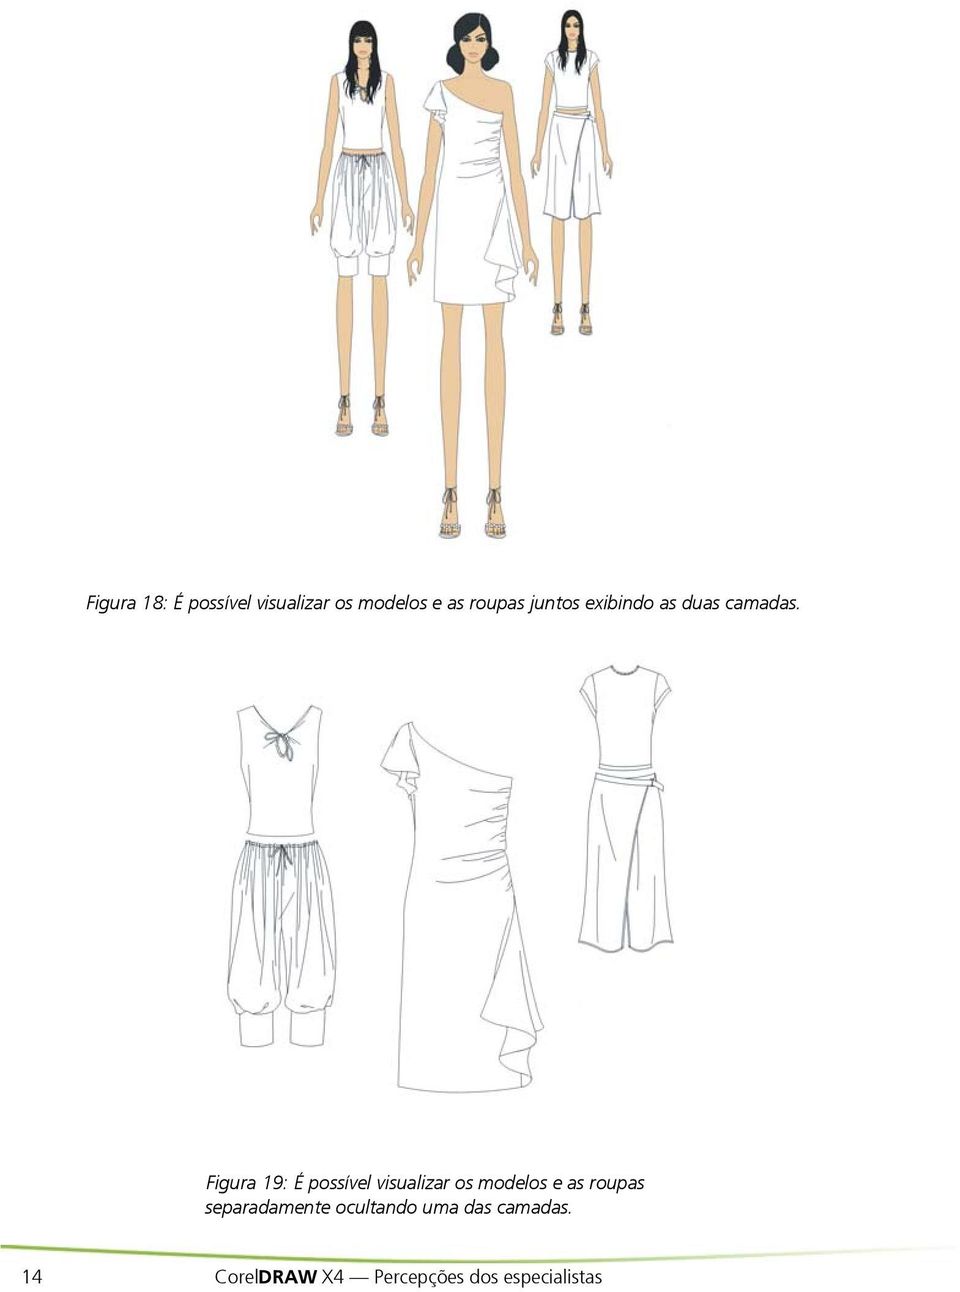 Figura 19: É possível visualizar os modelos e as roupas